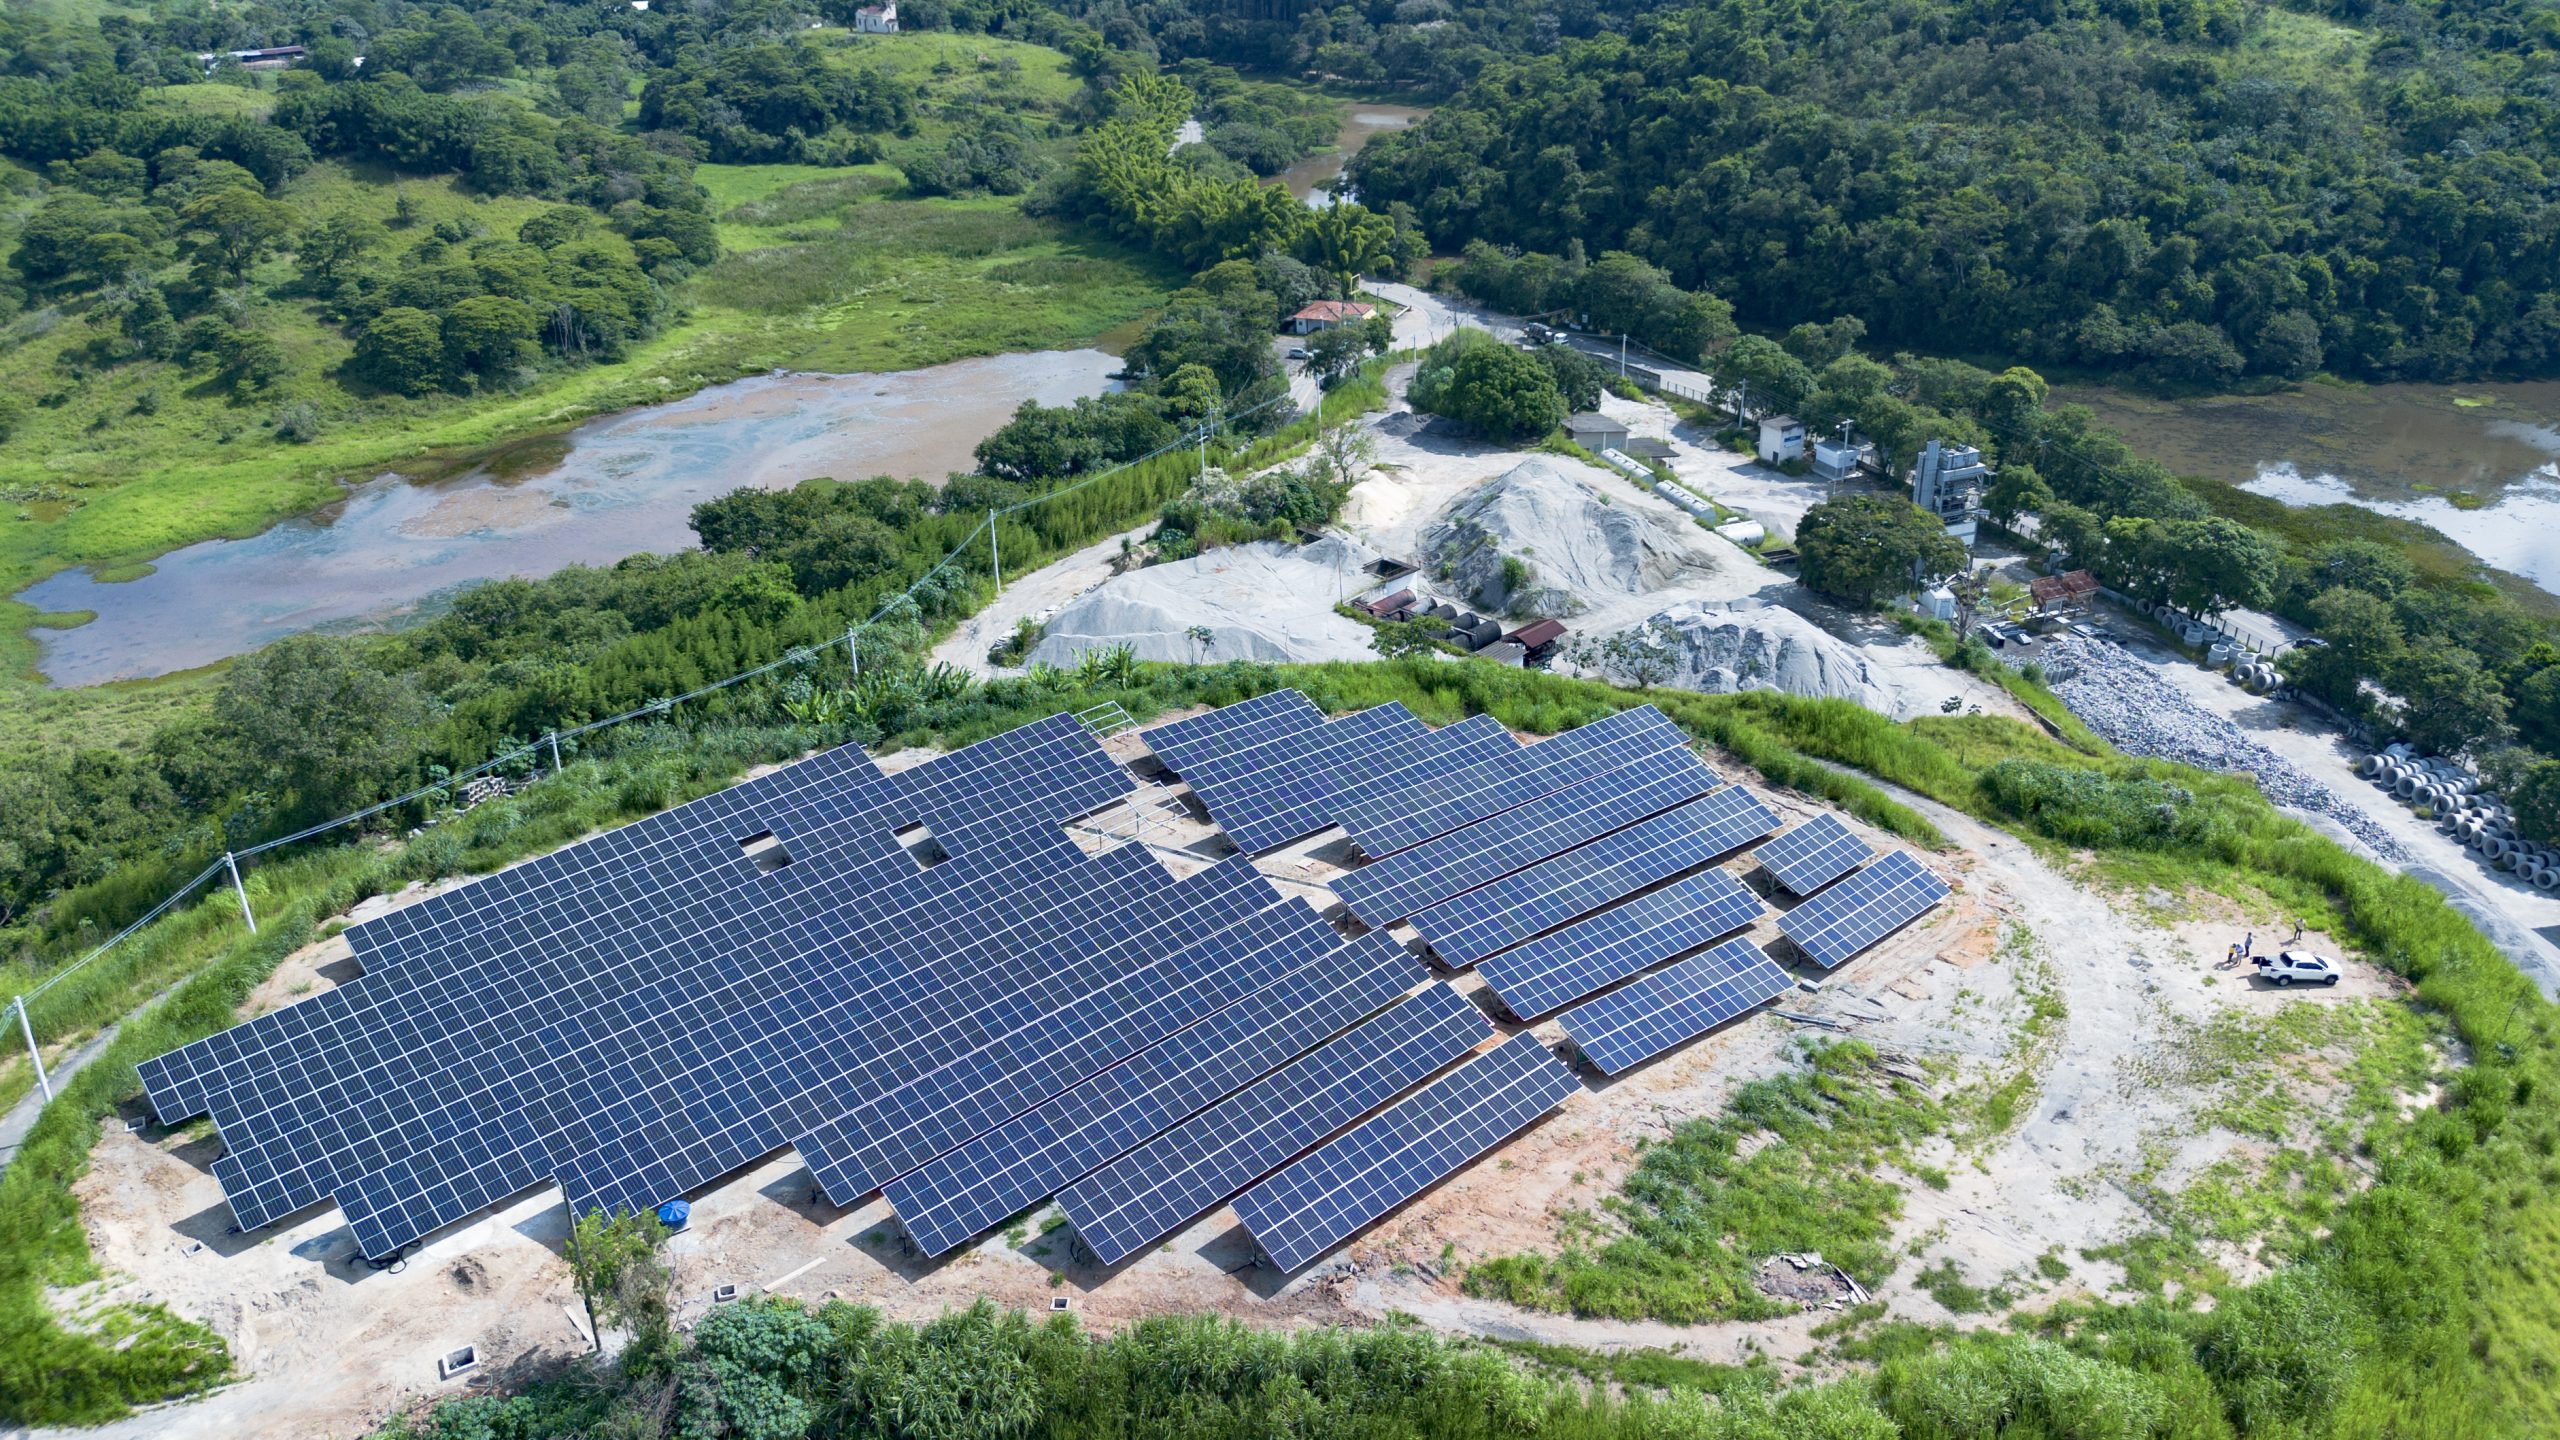 Usina solar do DER-RJ entra em operação no próximo mês em Piraí